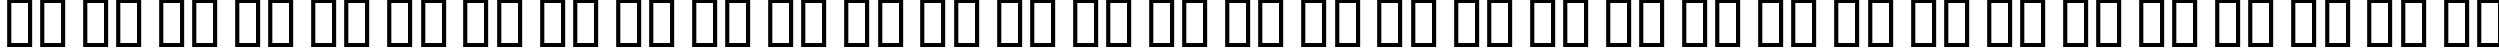 Пример написания русского алфавита шрифтом Andover